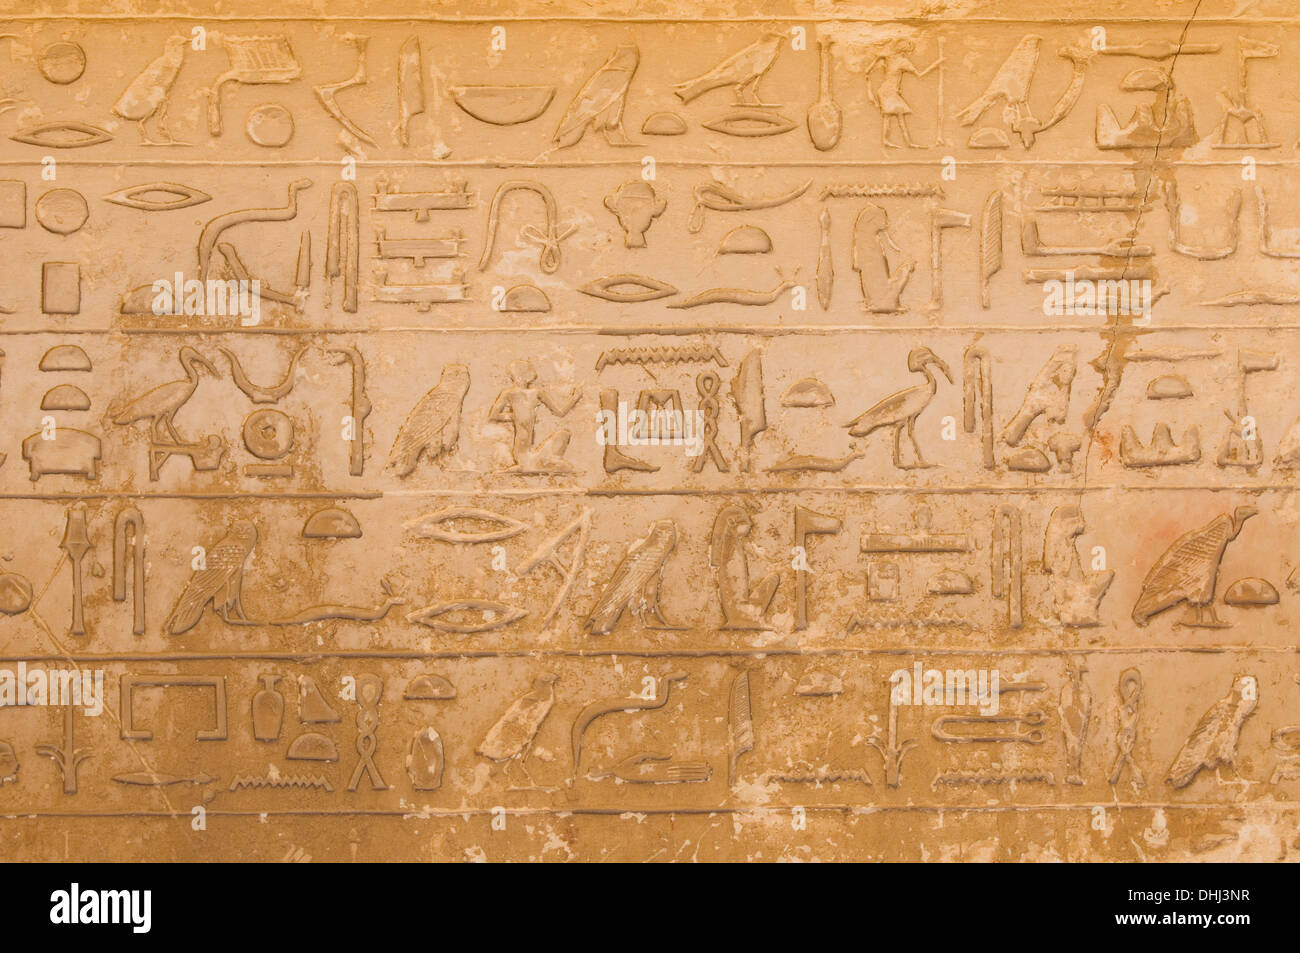 egyptian hieroglyphics from saqqarah, cairo Stock Photo